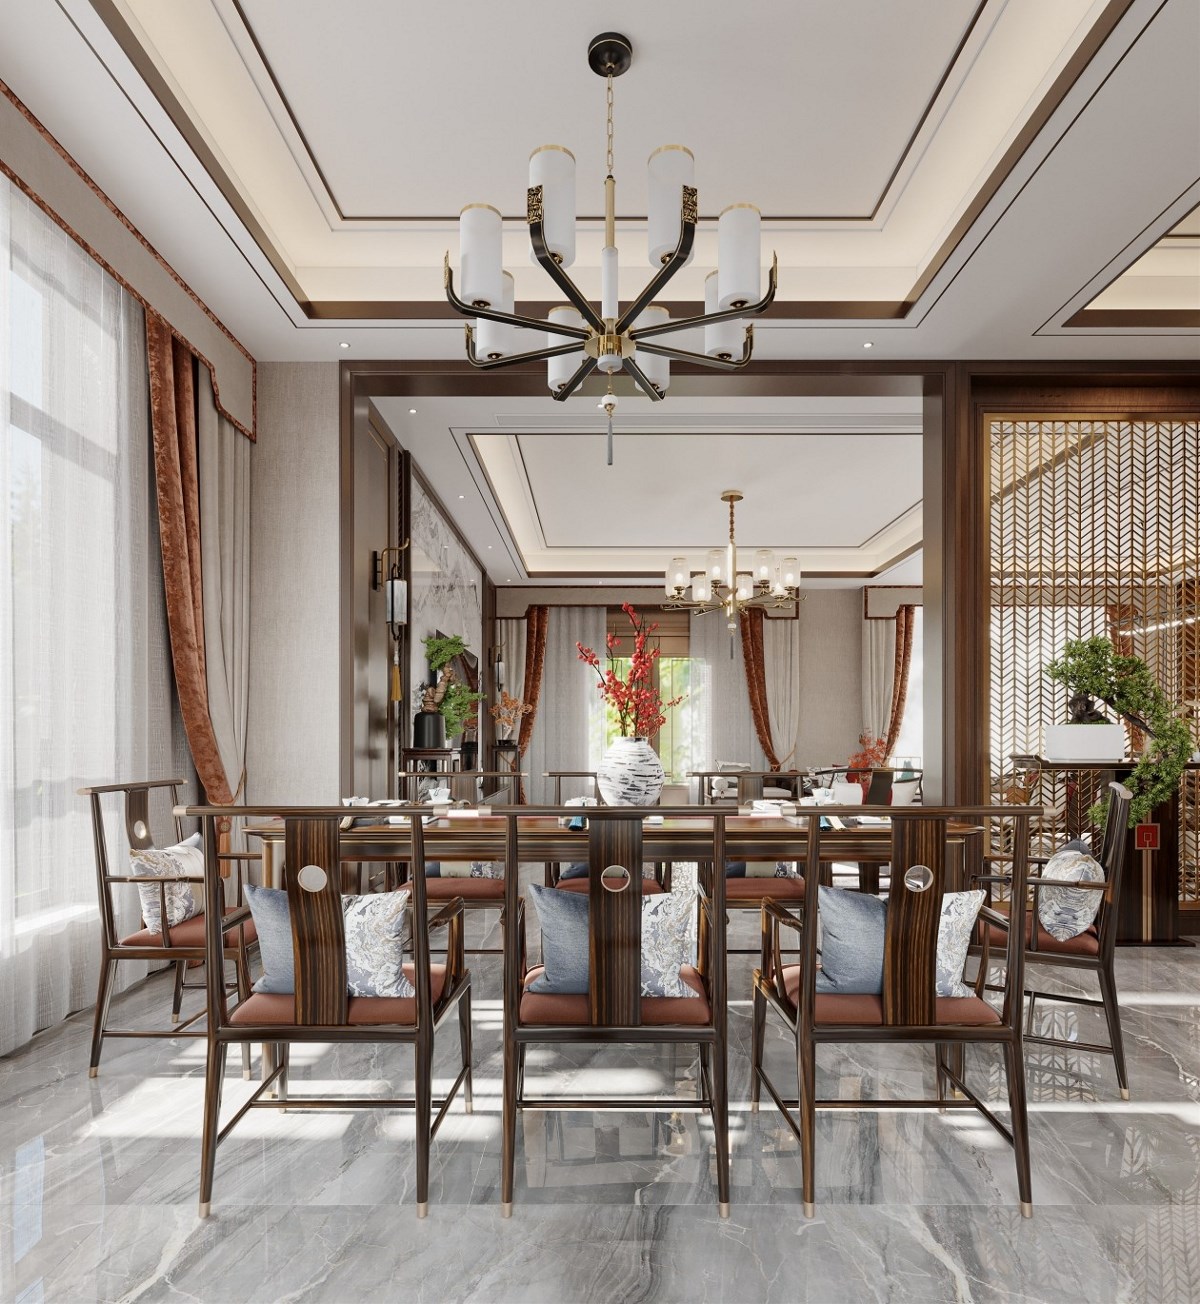 新中式风格客餐厅效果图设计